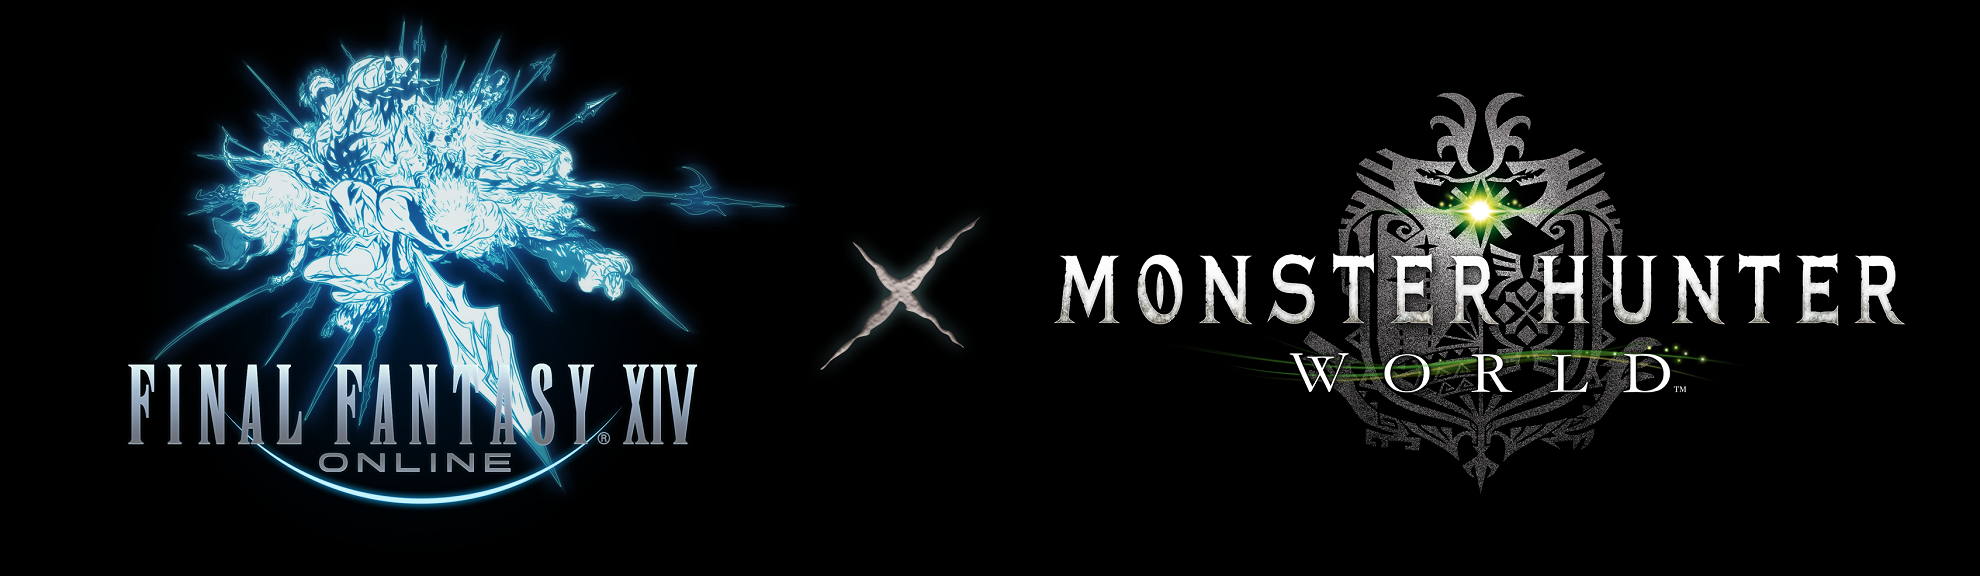 E3 2018: Colaboração online Monster Hunt e Final Fantasy XIV